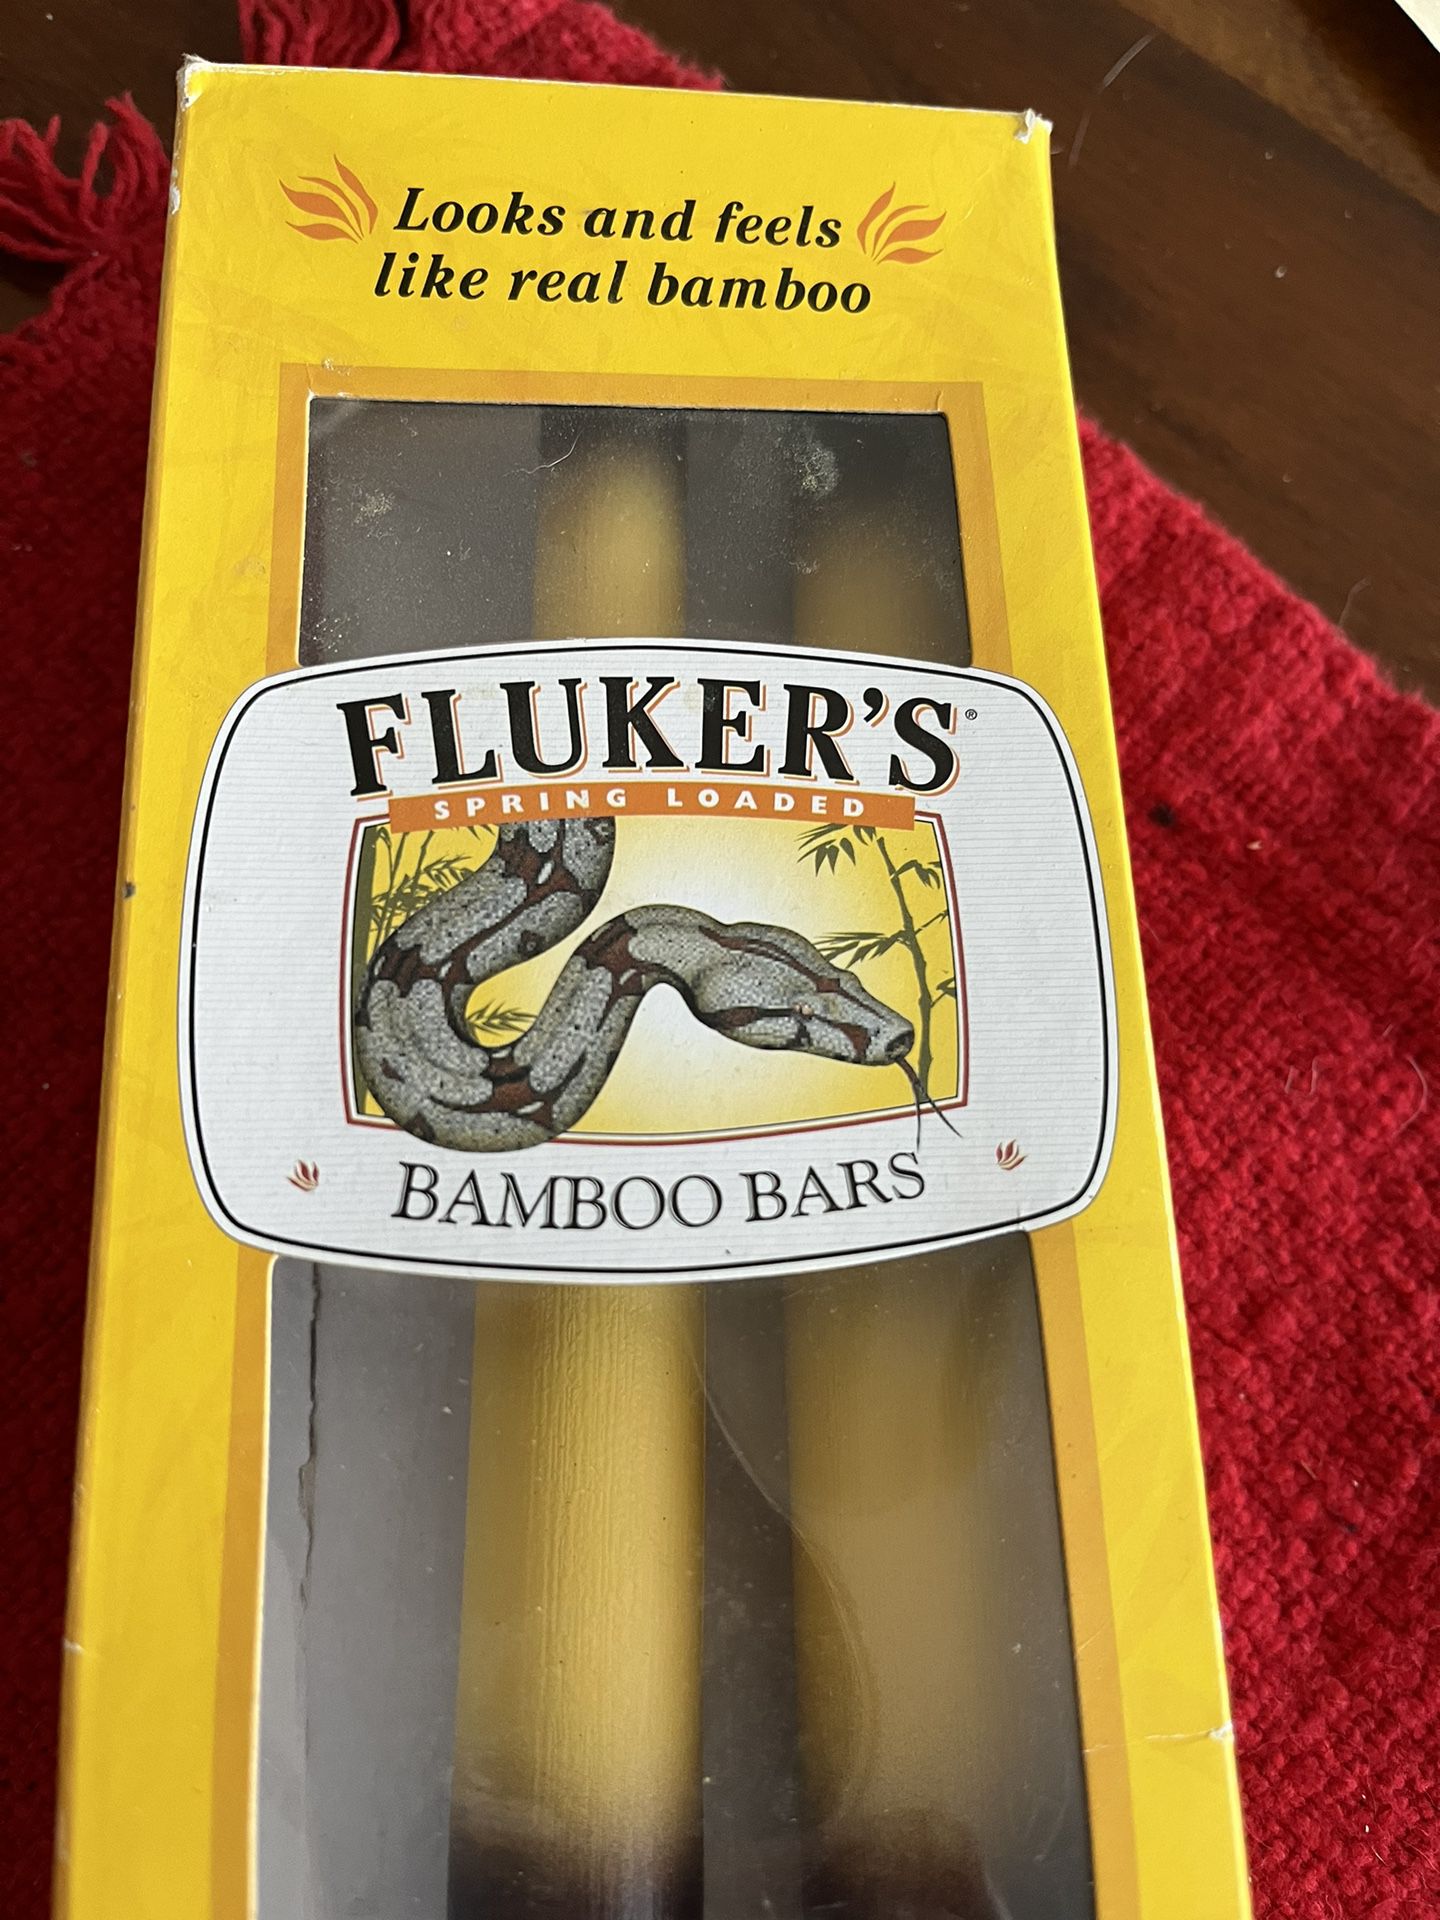  Bamboo bars